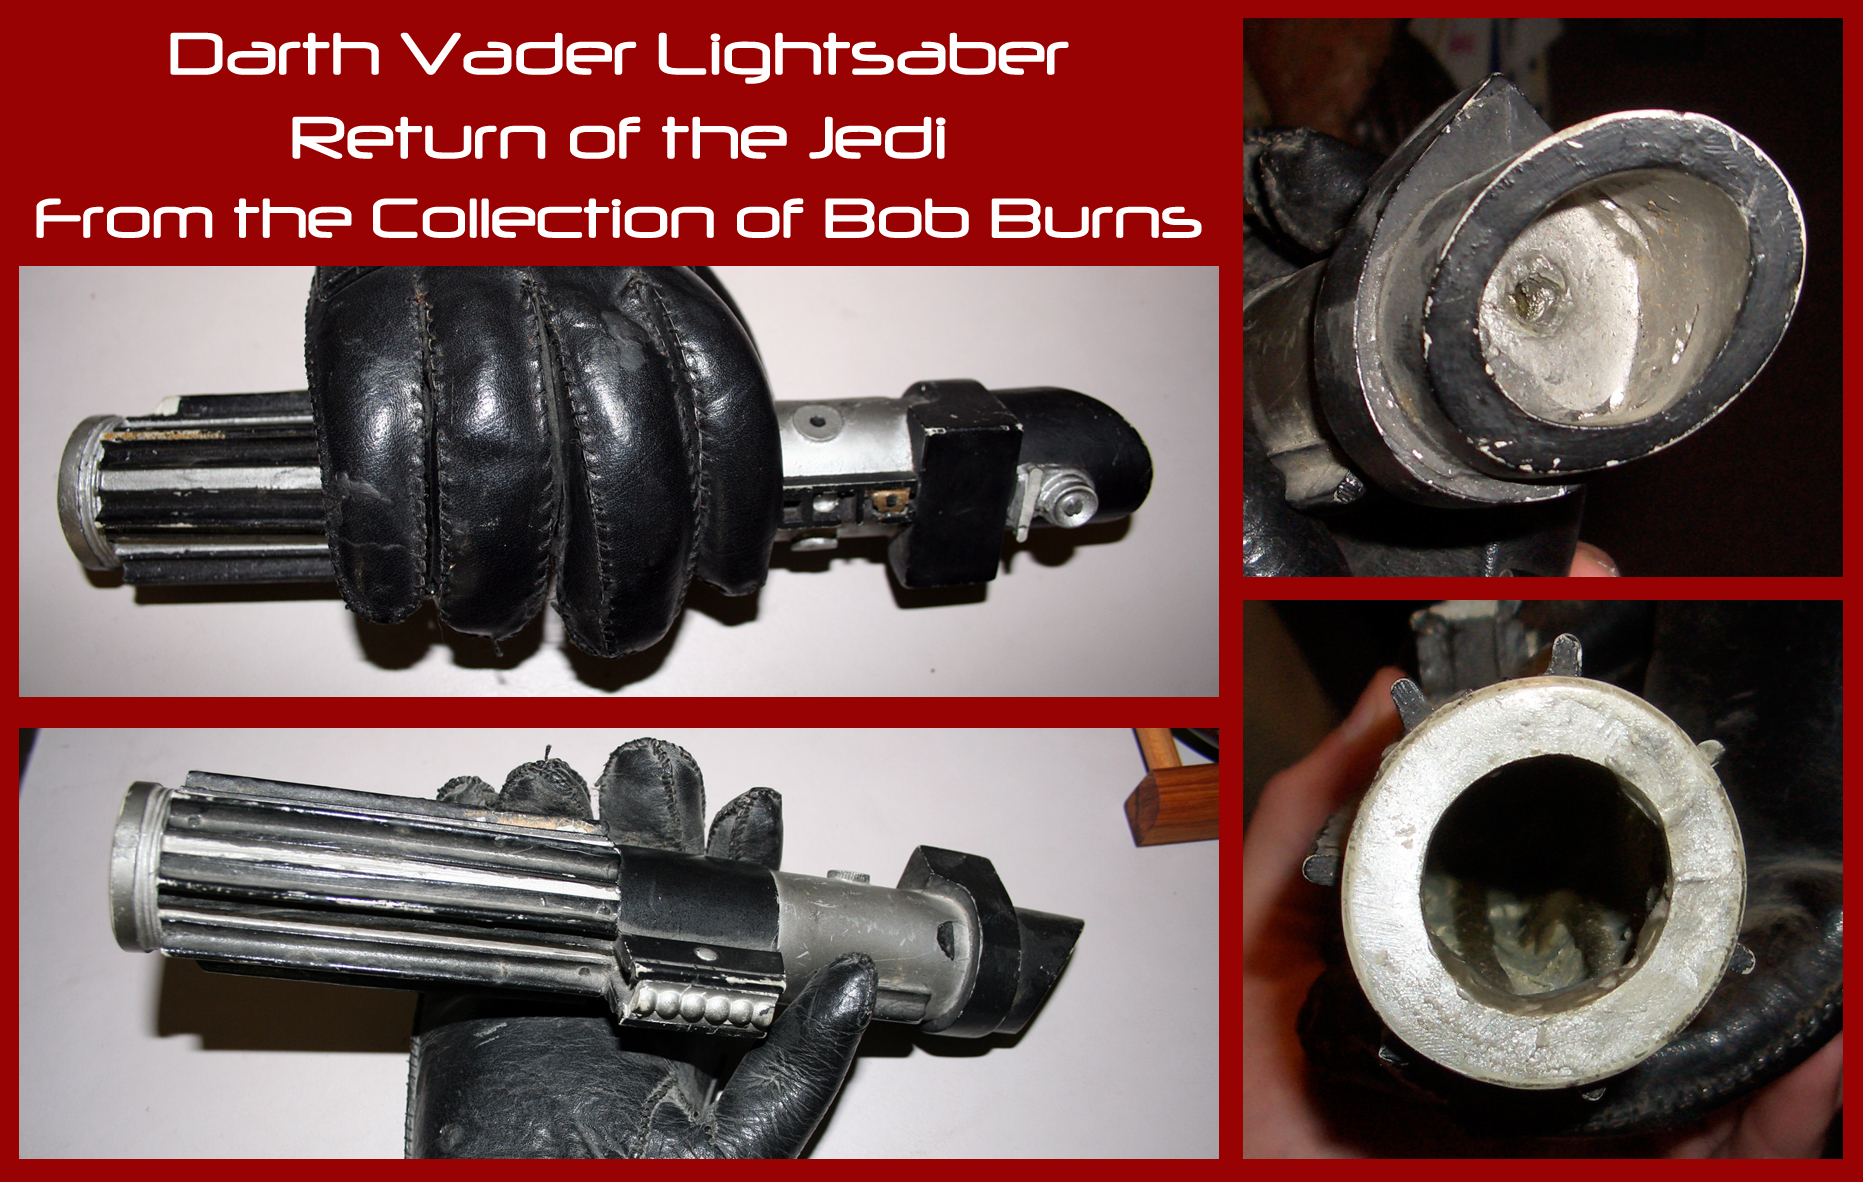 Darth-Vader-Return-of-the-Jedi-Lightsaber-Bob-Burns-Collection.jpg